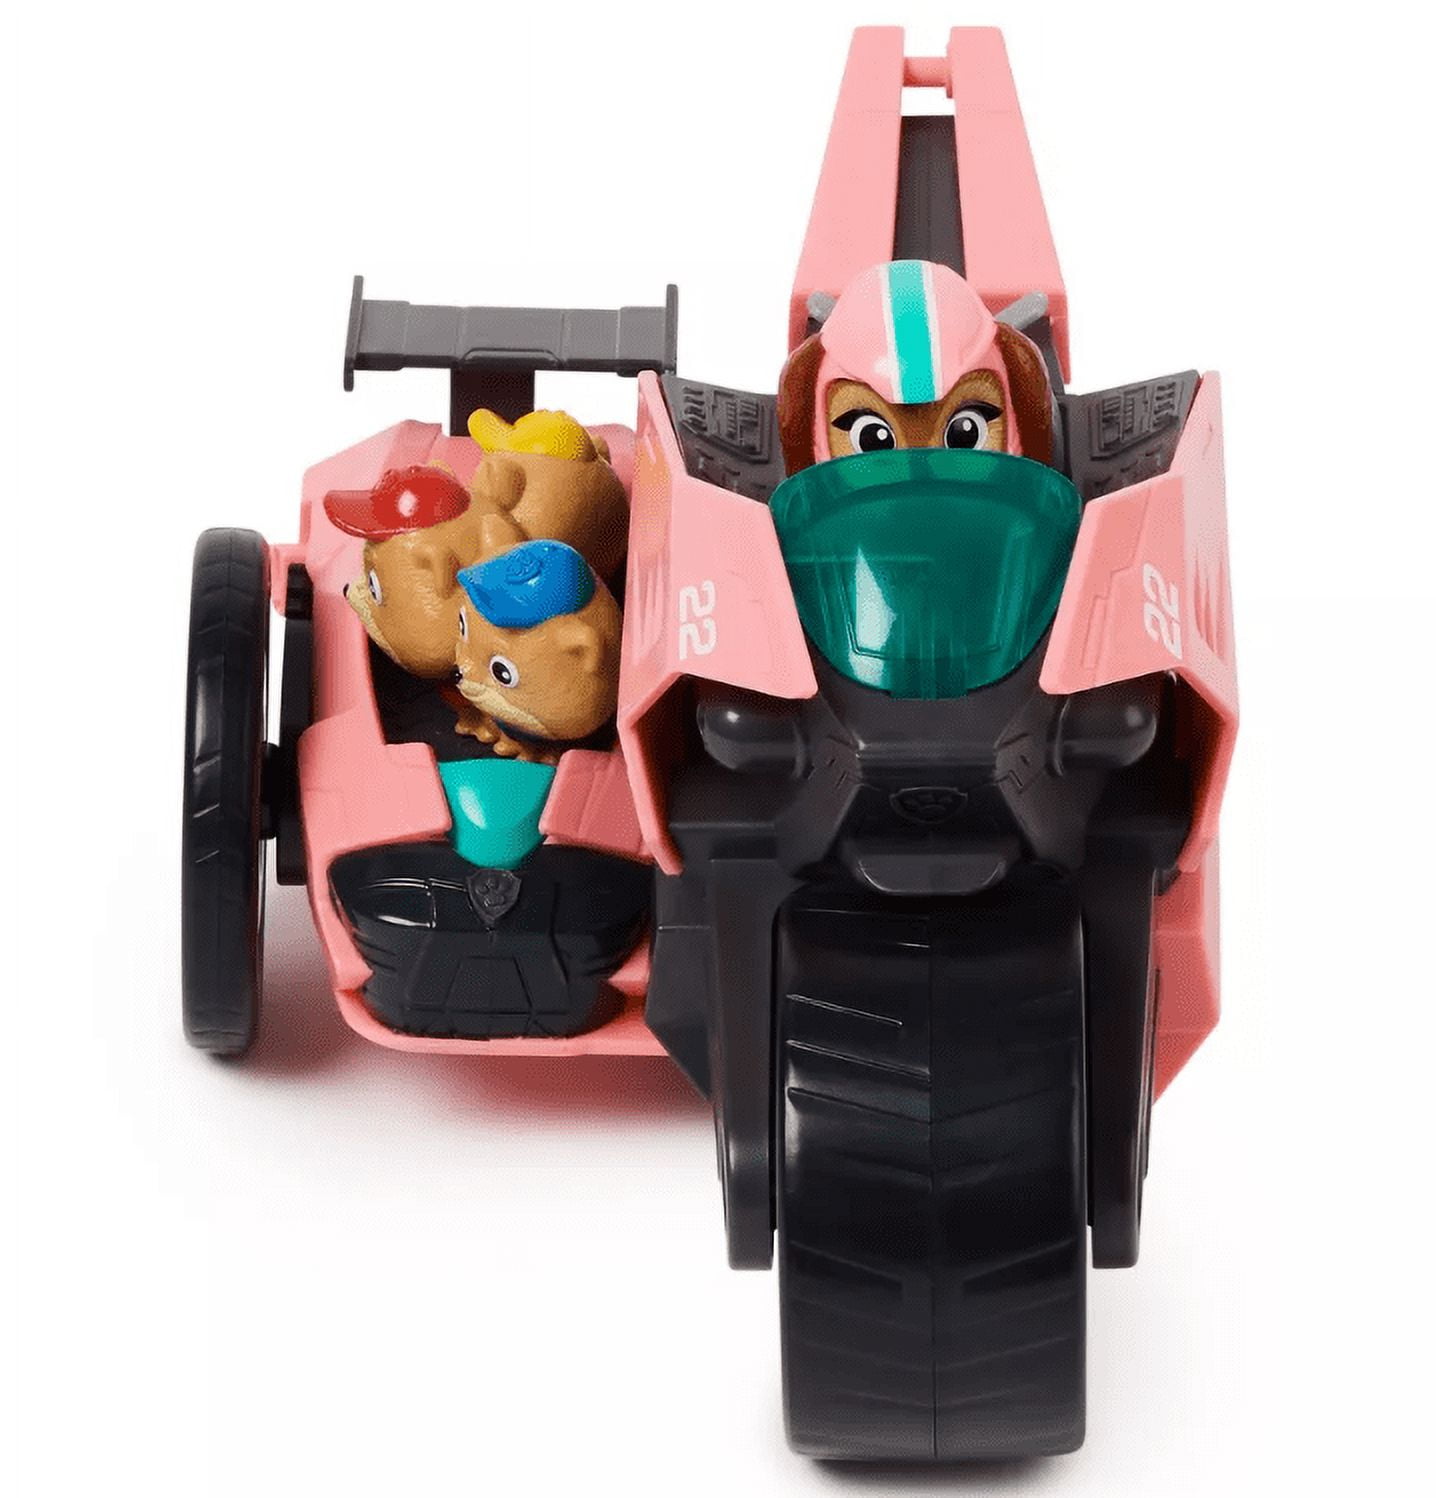 Paw Patrol Liberty & Poms Toy Vehicle Playset : Target